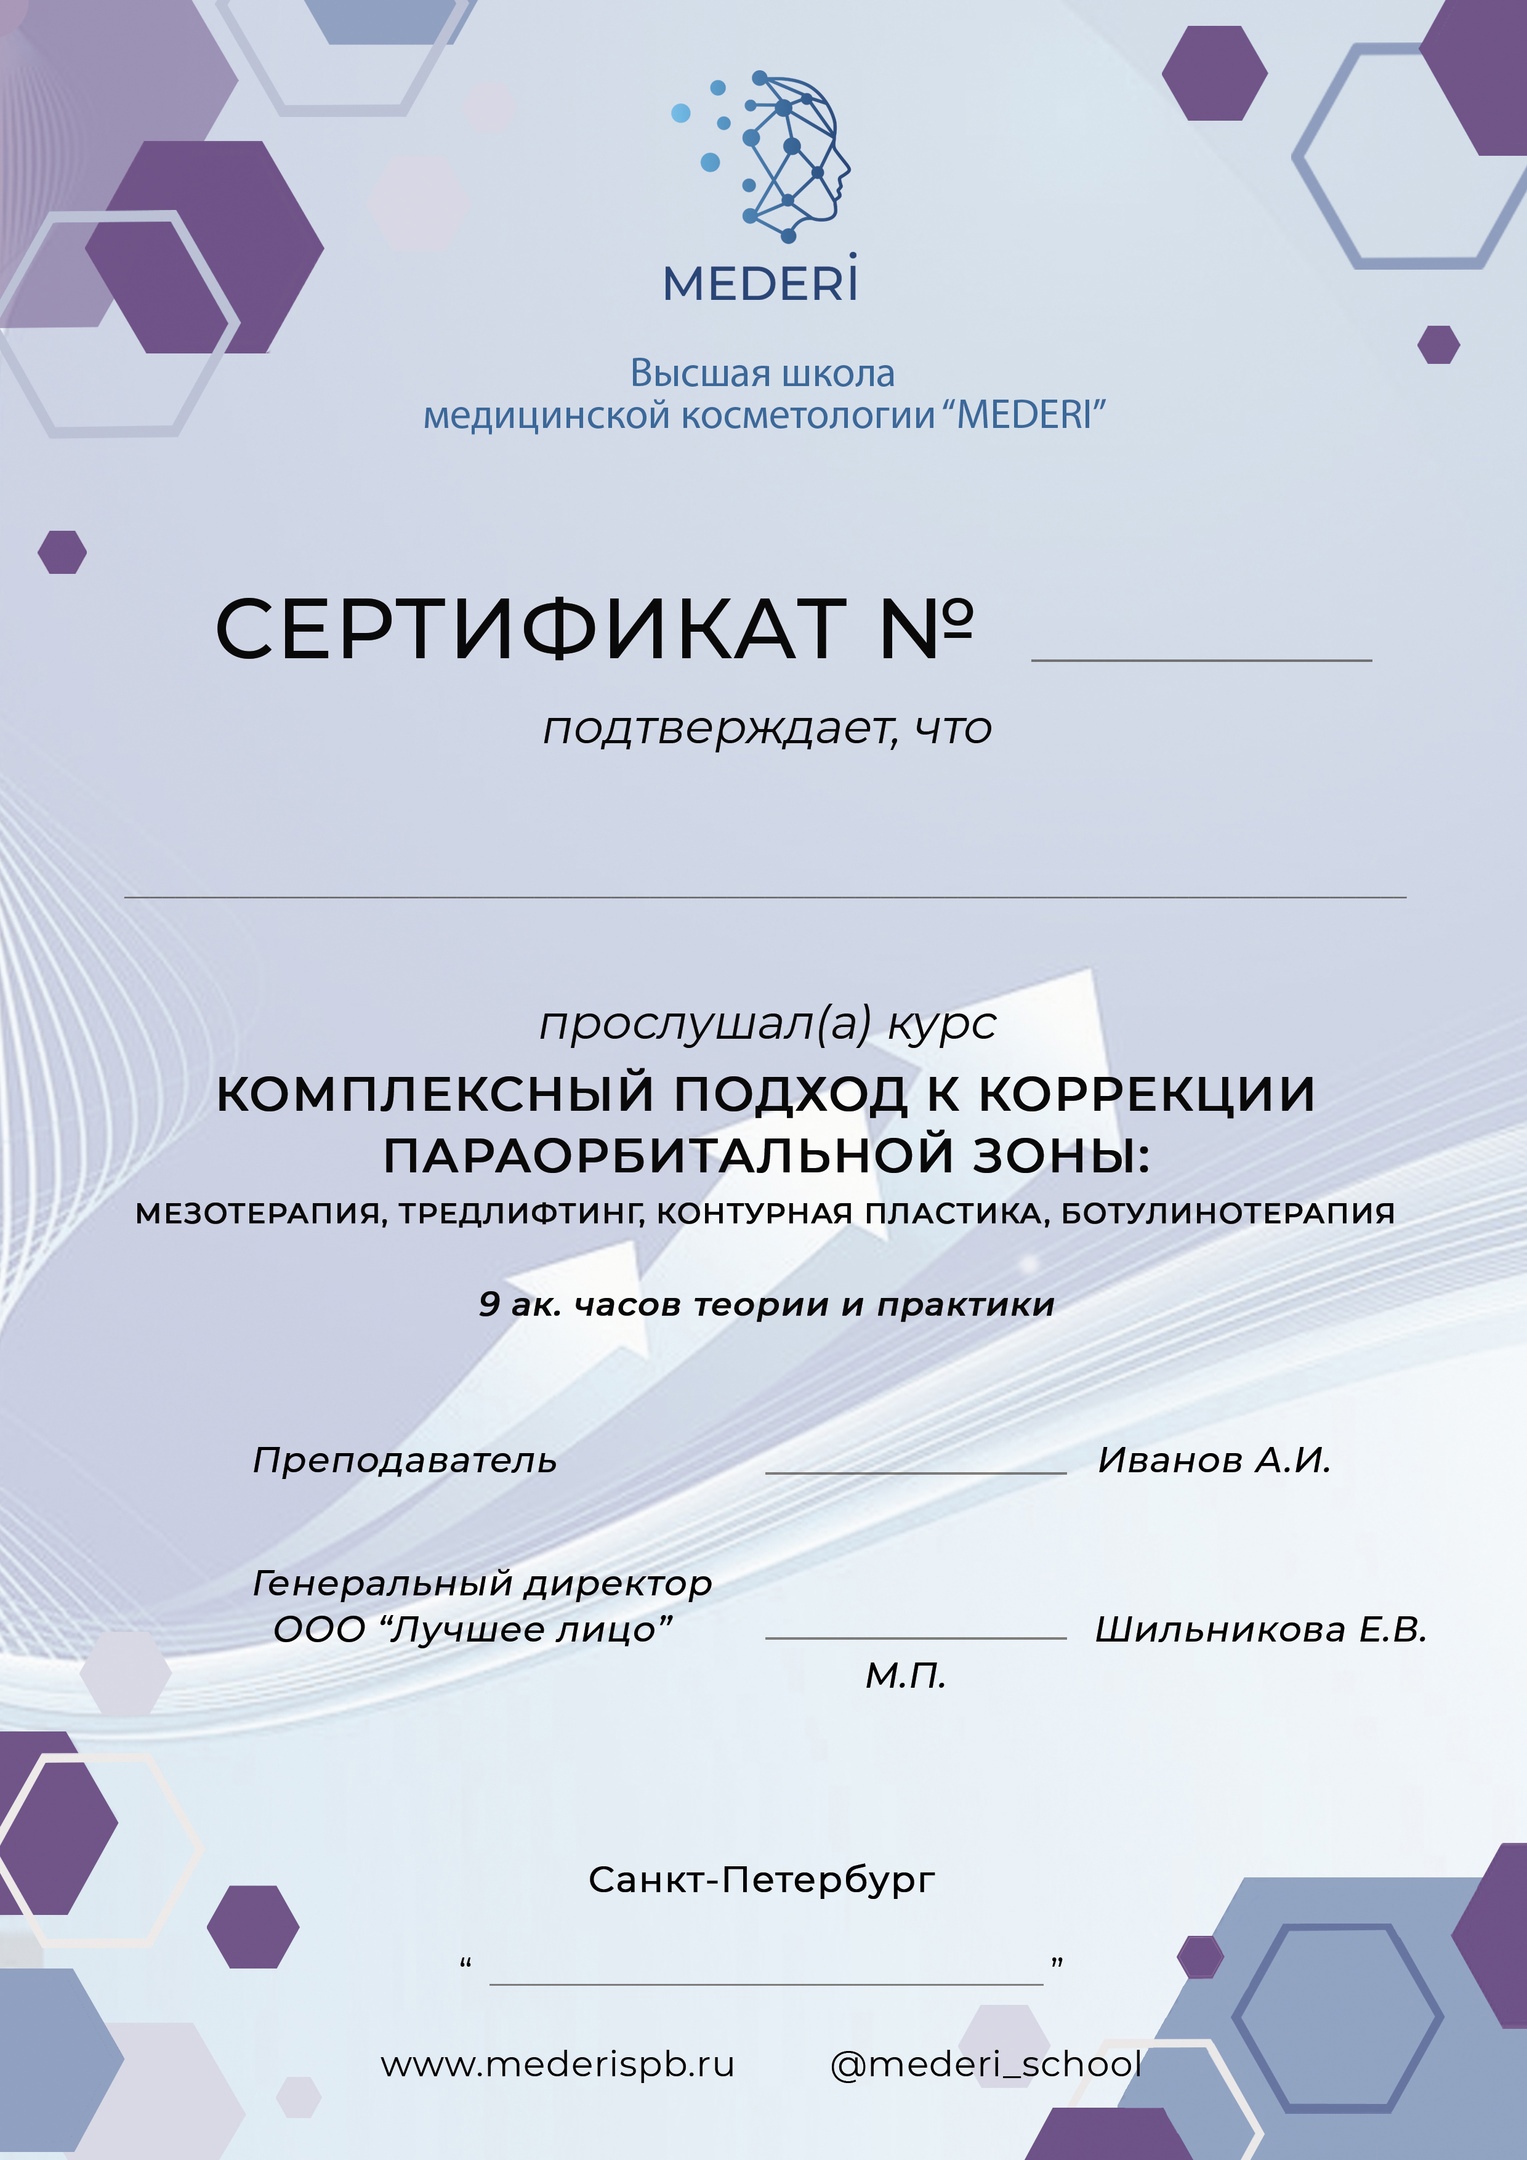 Сертификат по курсу: работа с параорбитальной зоной